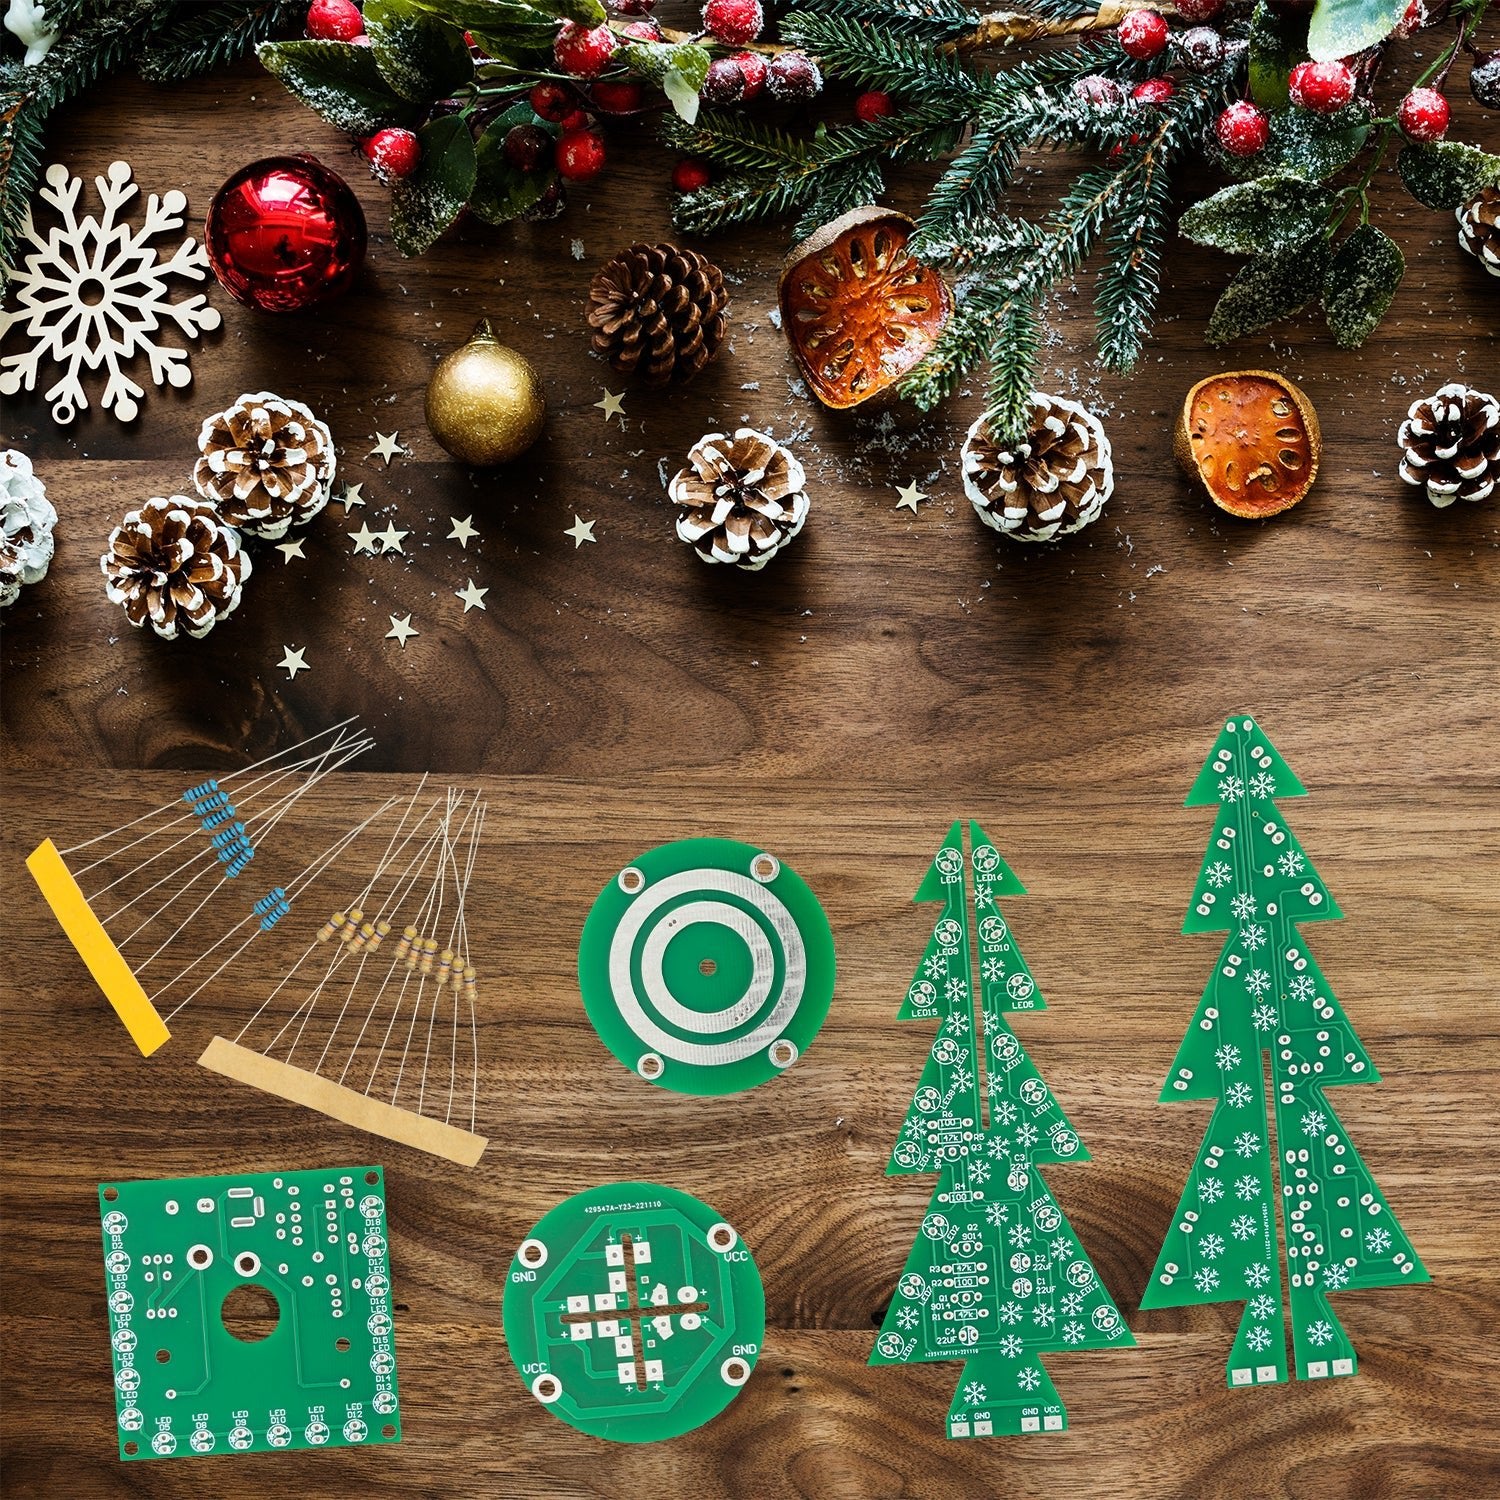 DIY LED Weihnachtsbaum Kit: Weihnachtsbaum Elektronik Bausatz zum Löten - Lötbausatz für einen drehenden Weihnachtsbaum mit LEDs und USB-Anschluss - AZ-Delivery